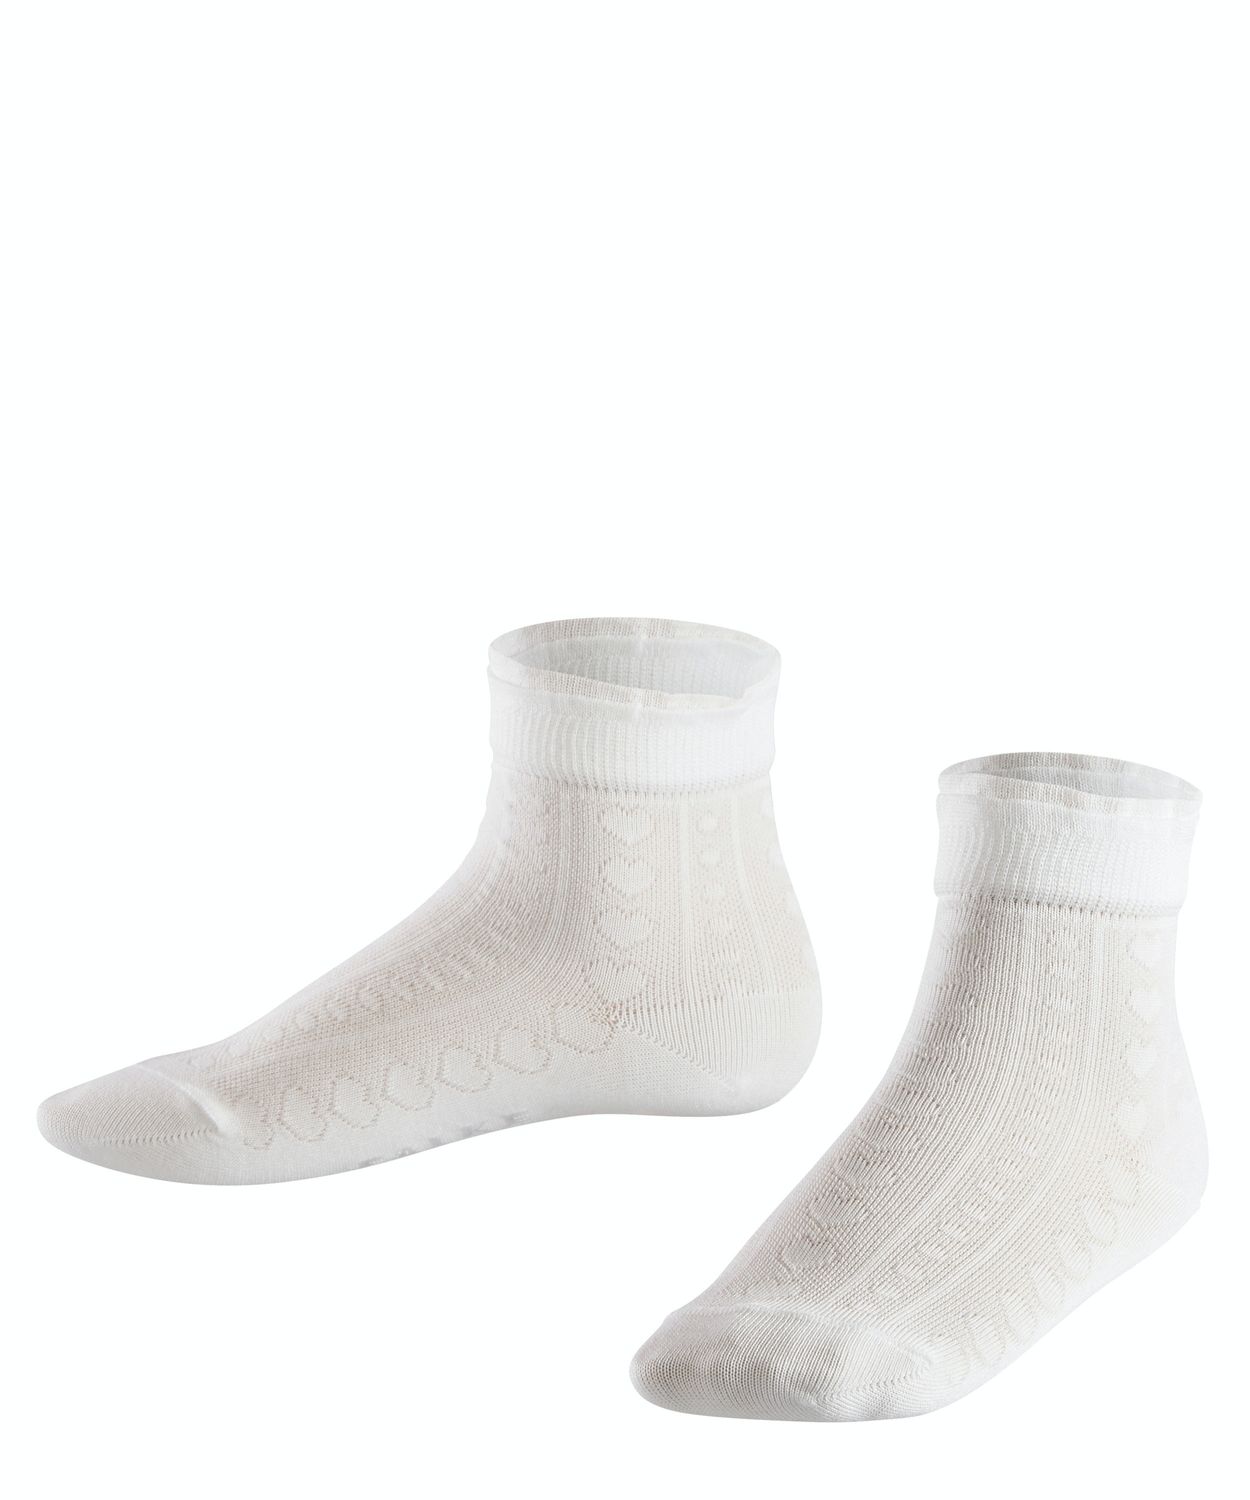 Falke Kinder Socken Romantic Net Hersteller: Falke Bestellnummer:4043874333146